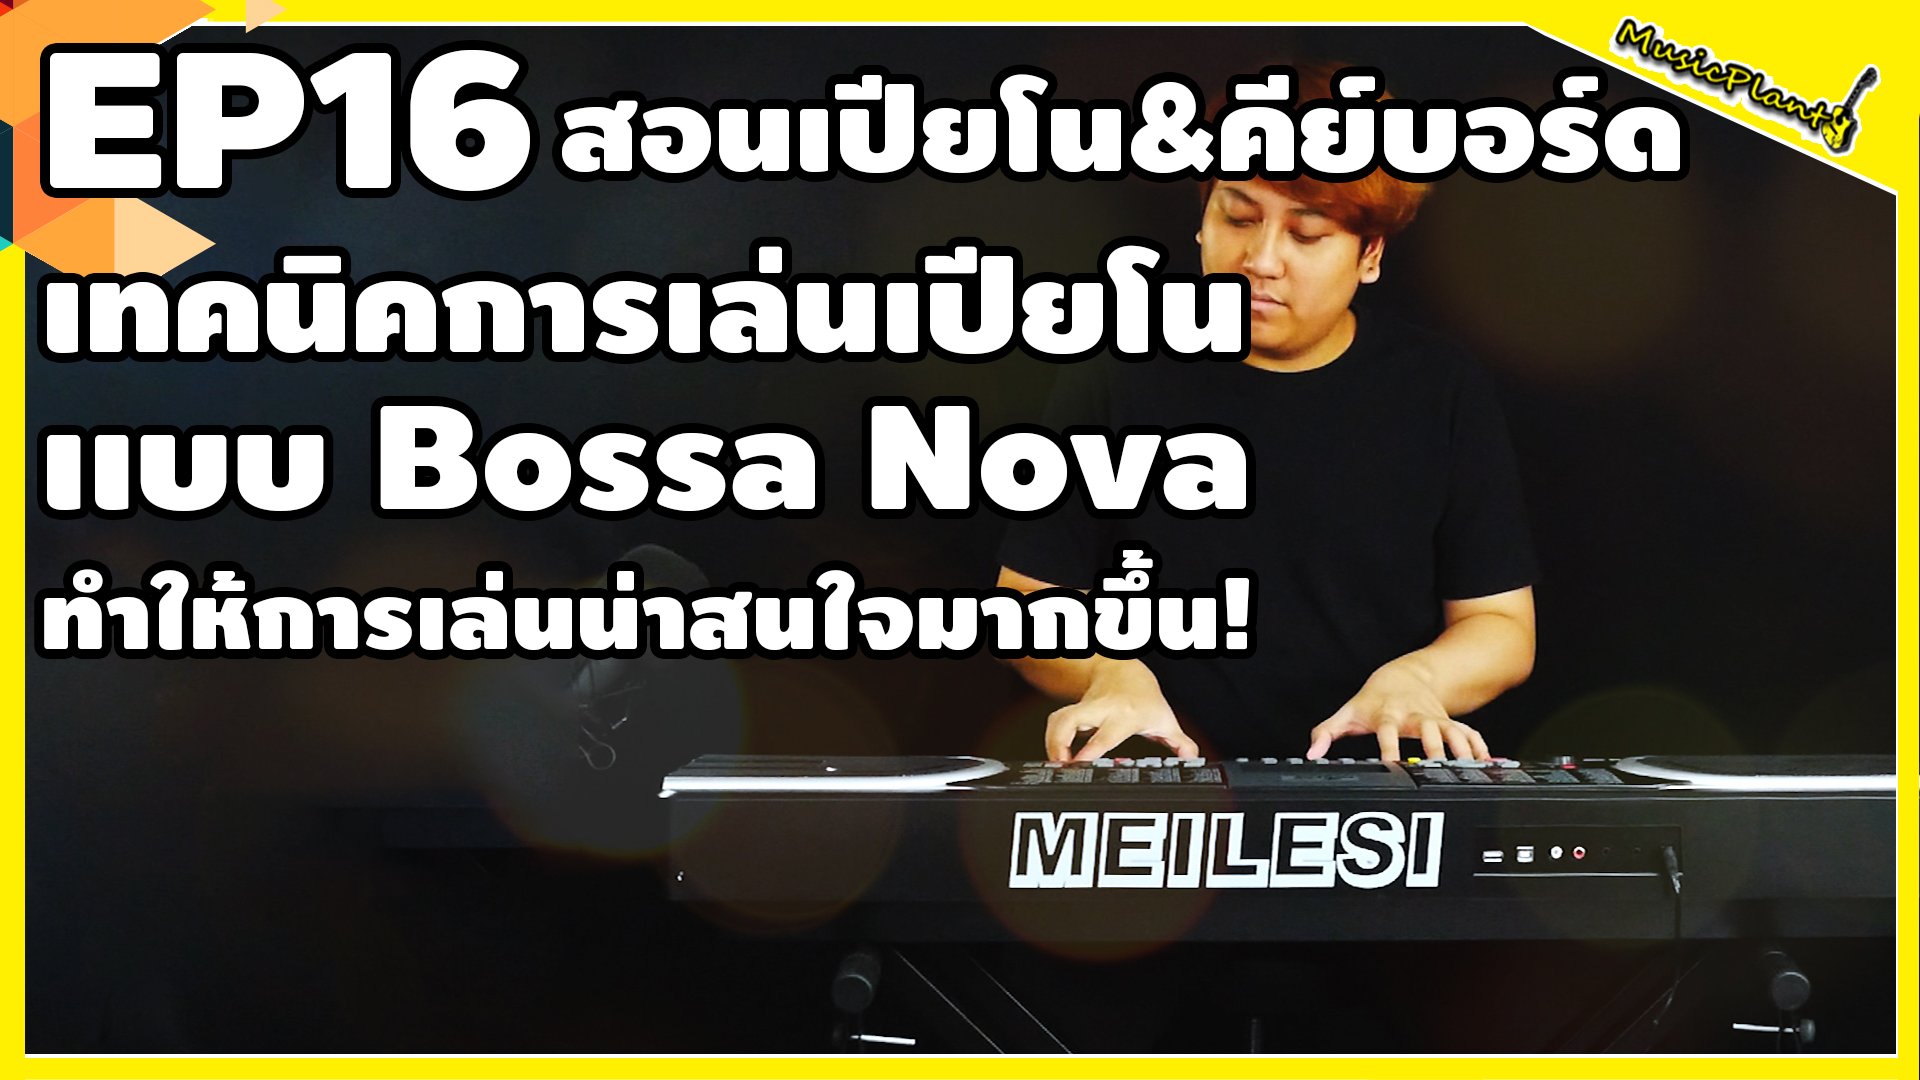 สอนเปียโน&คีย์บอร์ด EP.16 เทคนิคการเล่นแบบ Bossa Nova เเบบเข้าใจง่าย